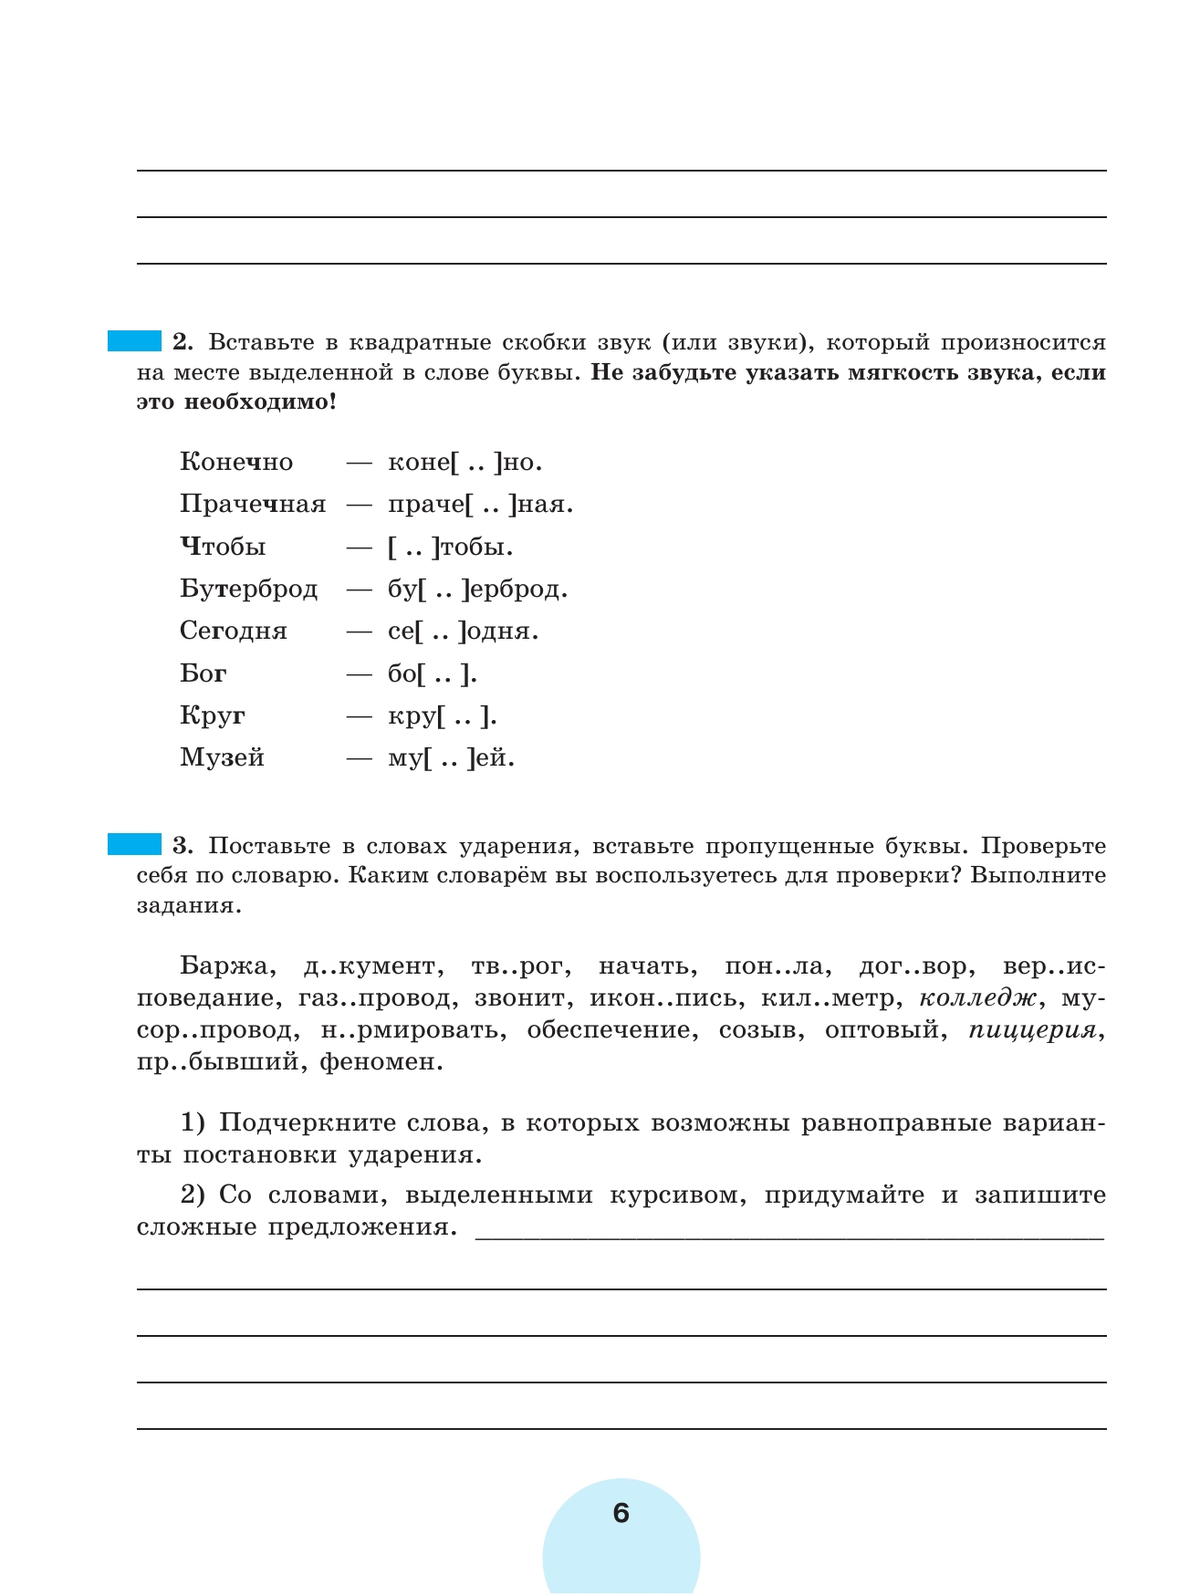 Русский язык. Рабочая тетрадь. 8 класс. В 2 ч. Часть 1 4